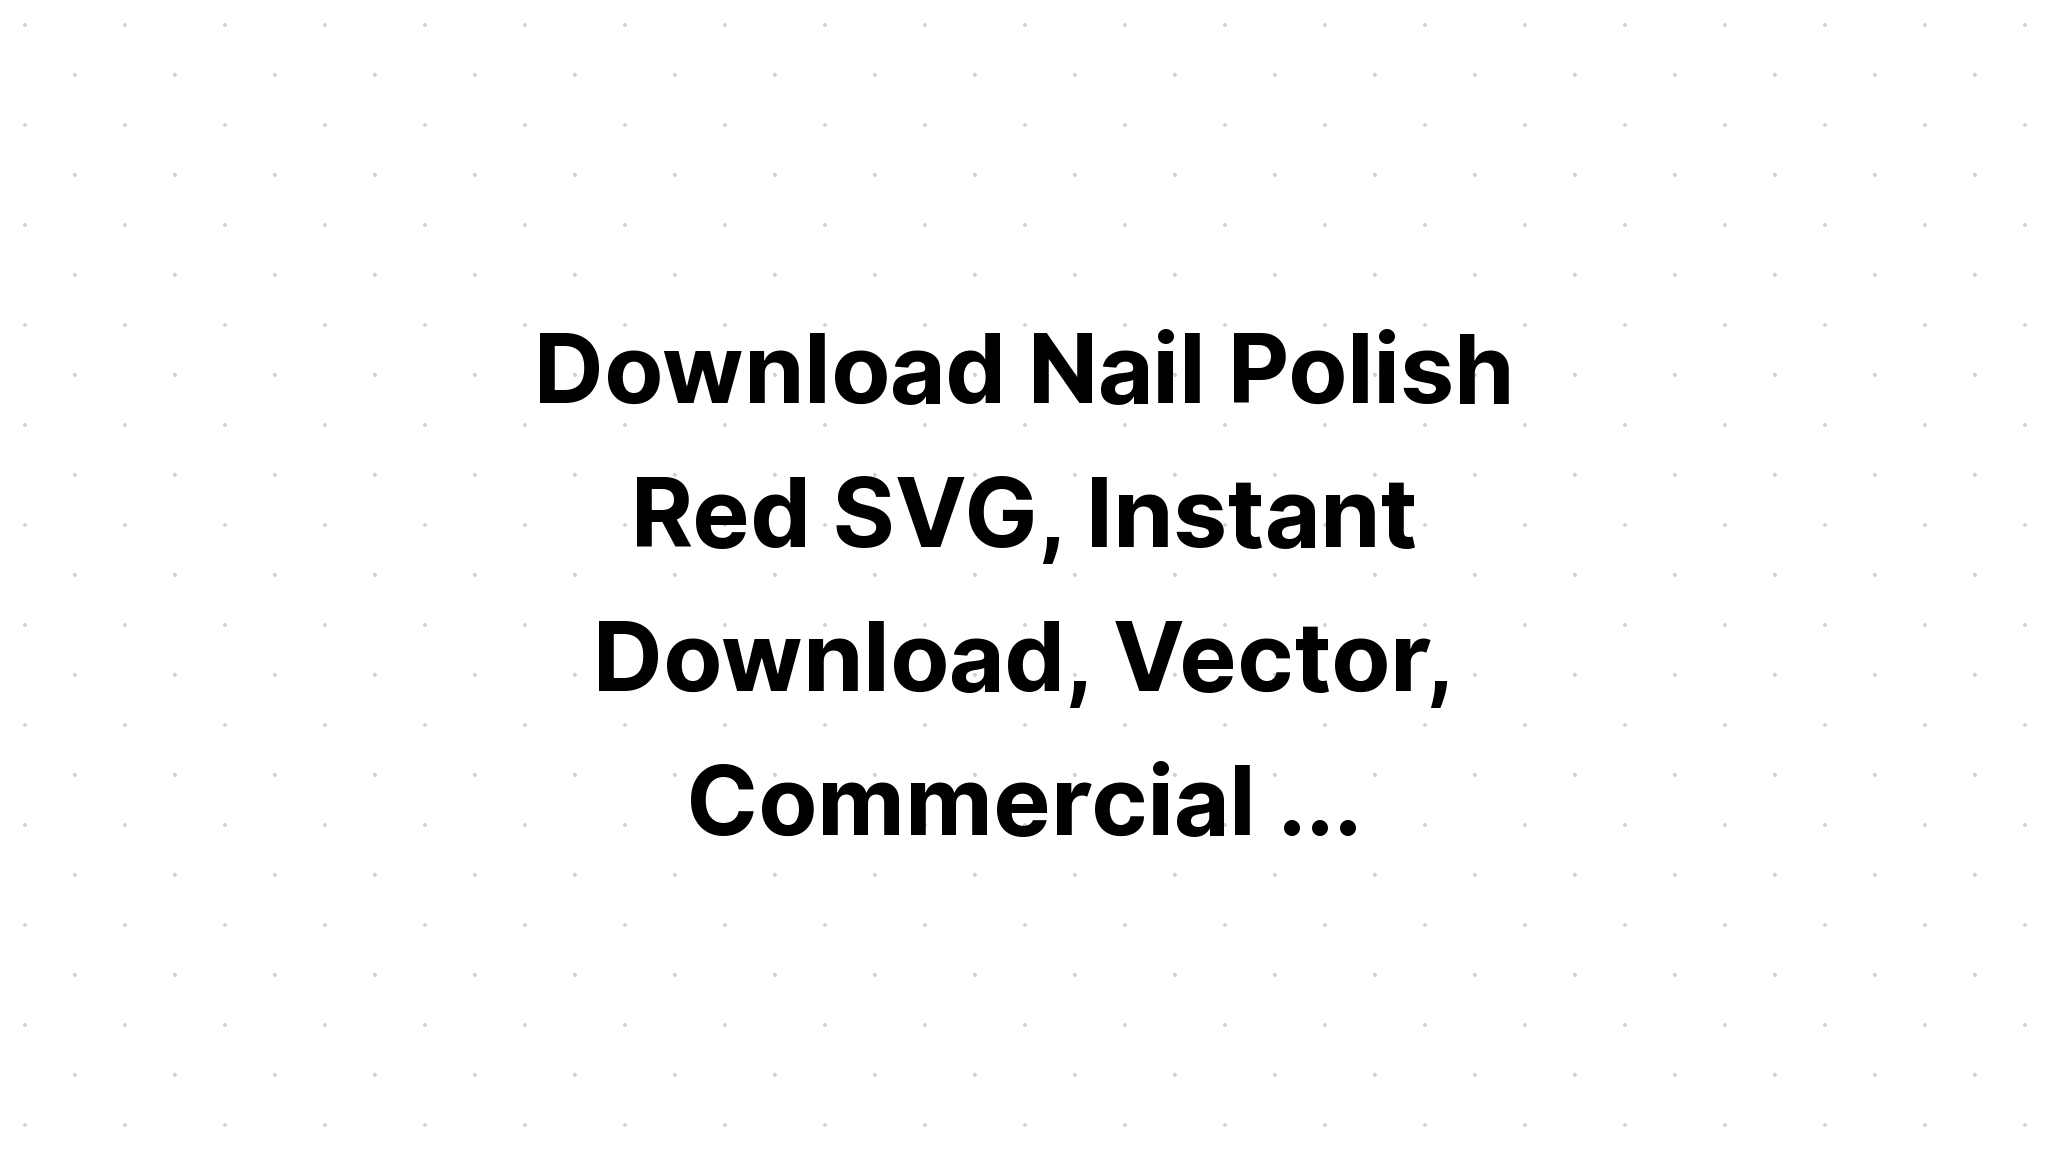 Download Nail Enamel Silhouette SVG File